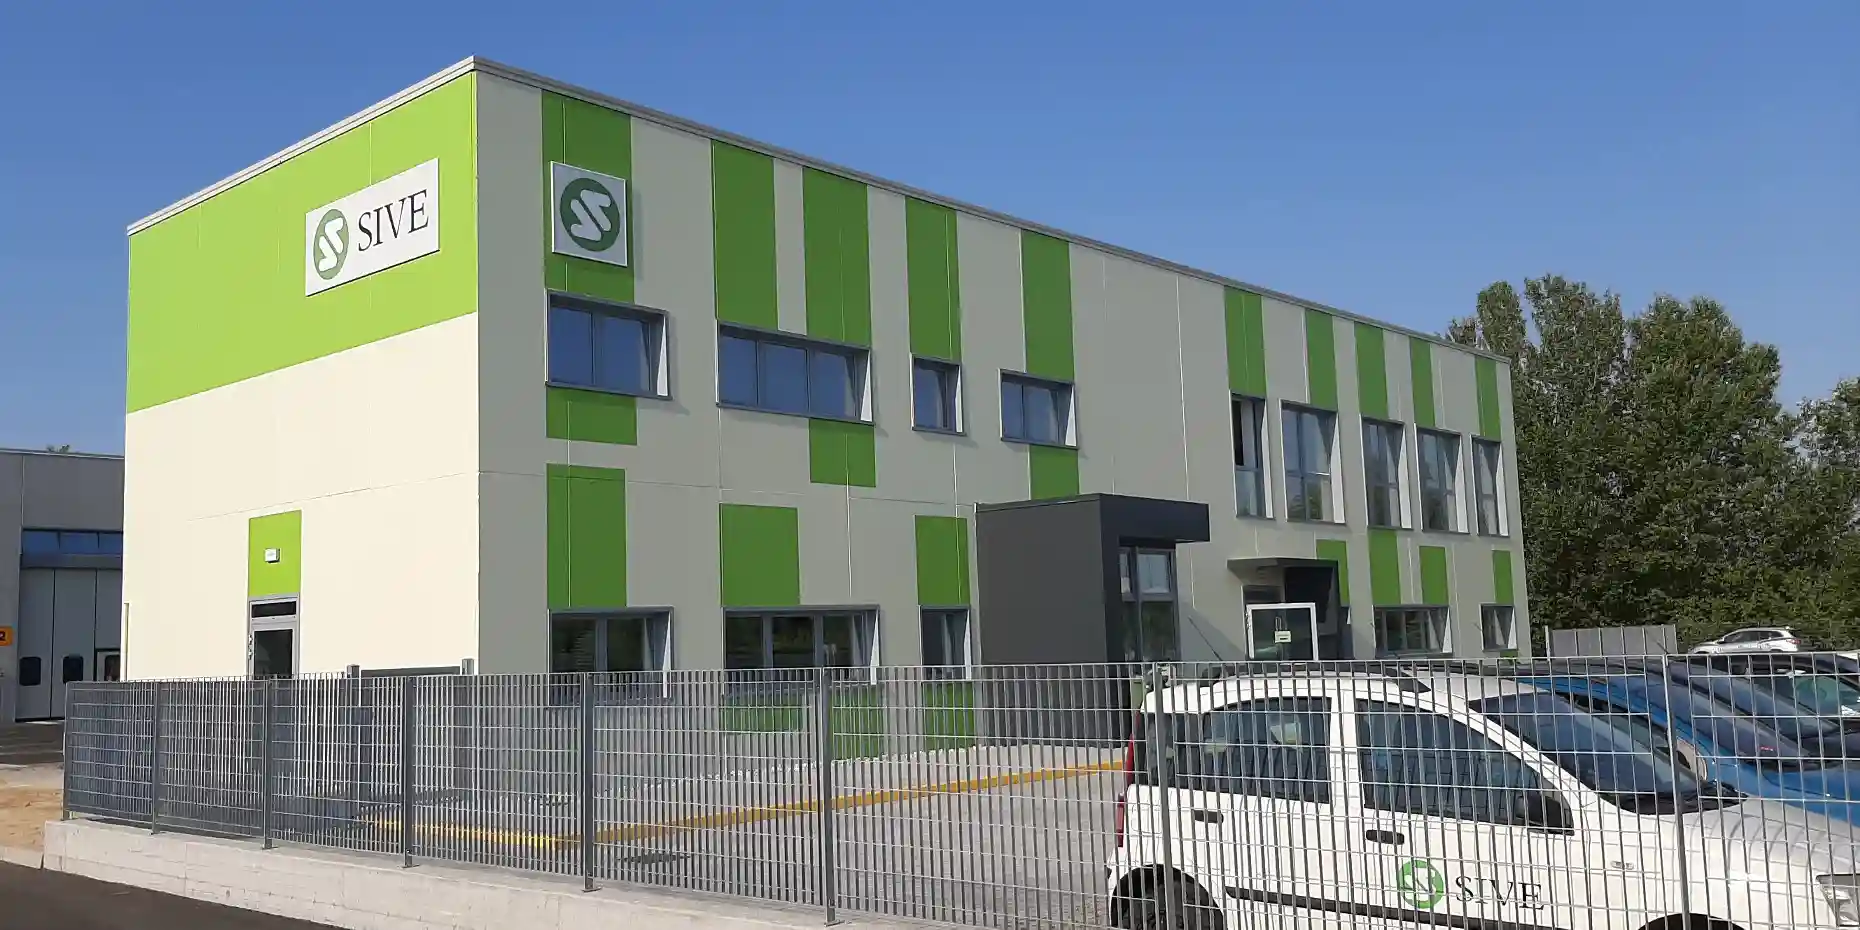 Sive di Legnago, società di raccolta rifiuti, è diventata una struttura cardioprotetta per lavoratori e utenti non solo dell’azienda